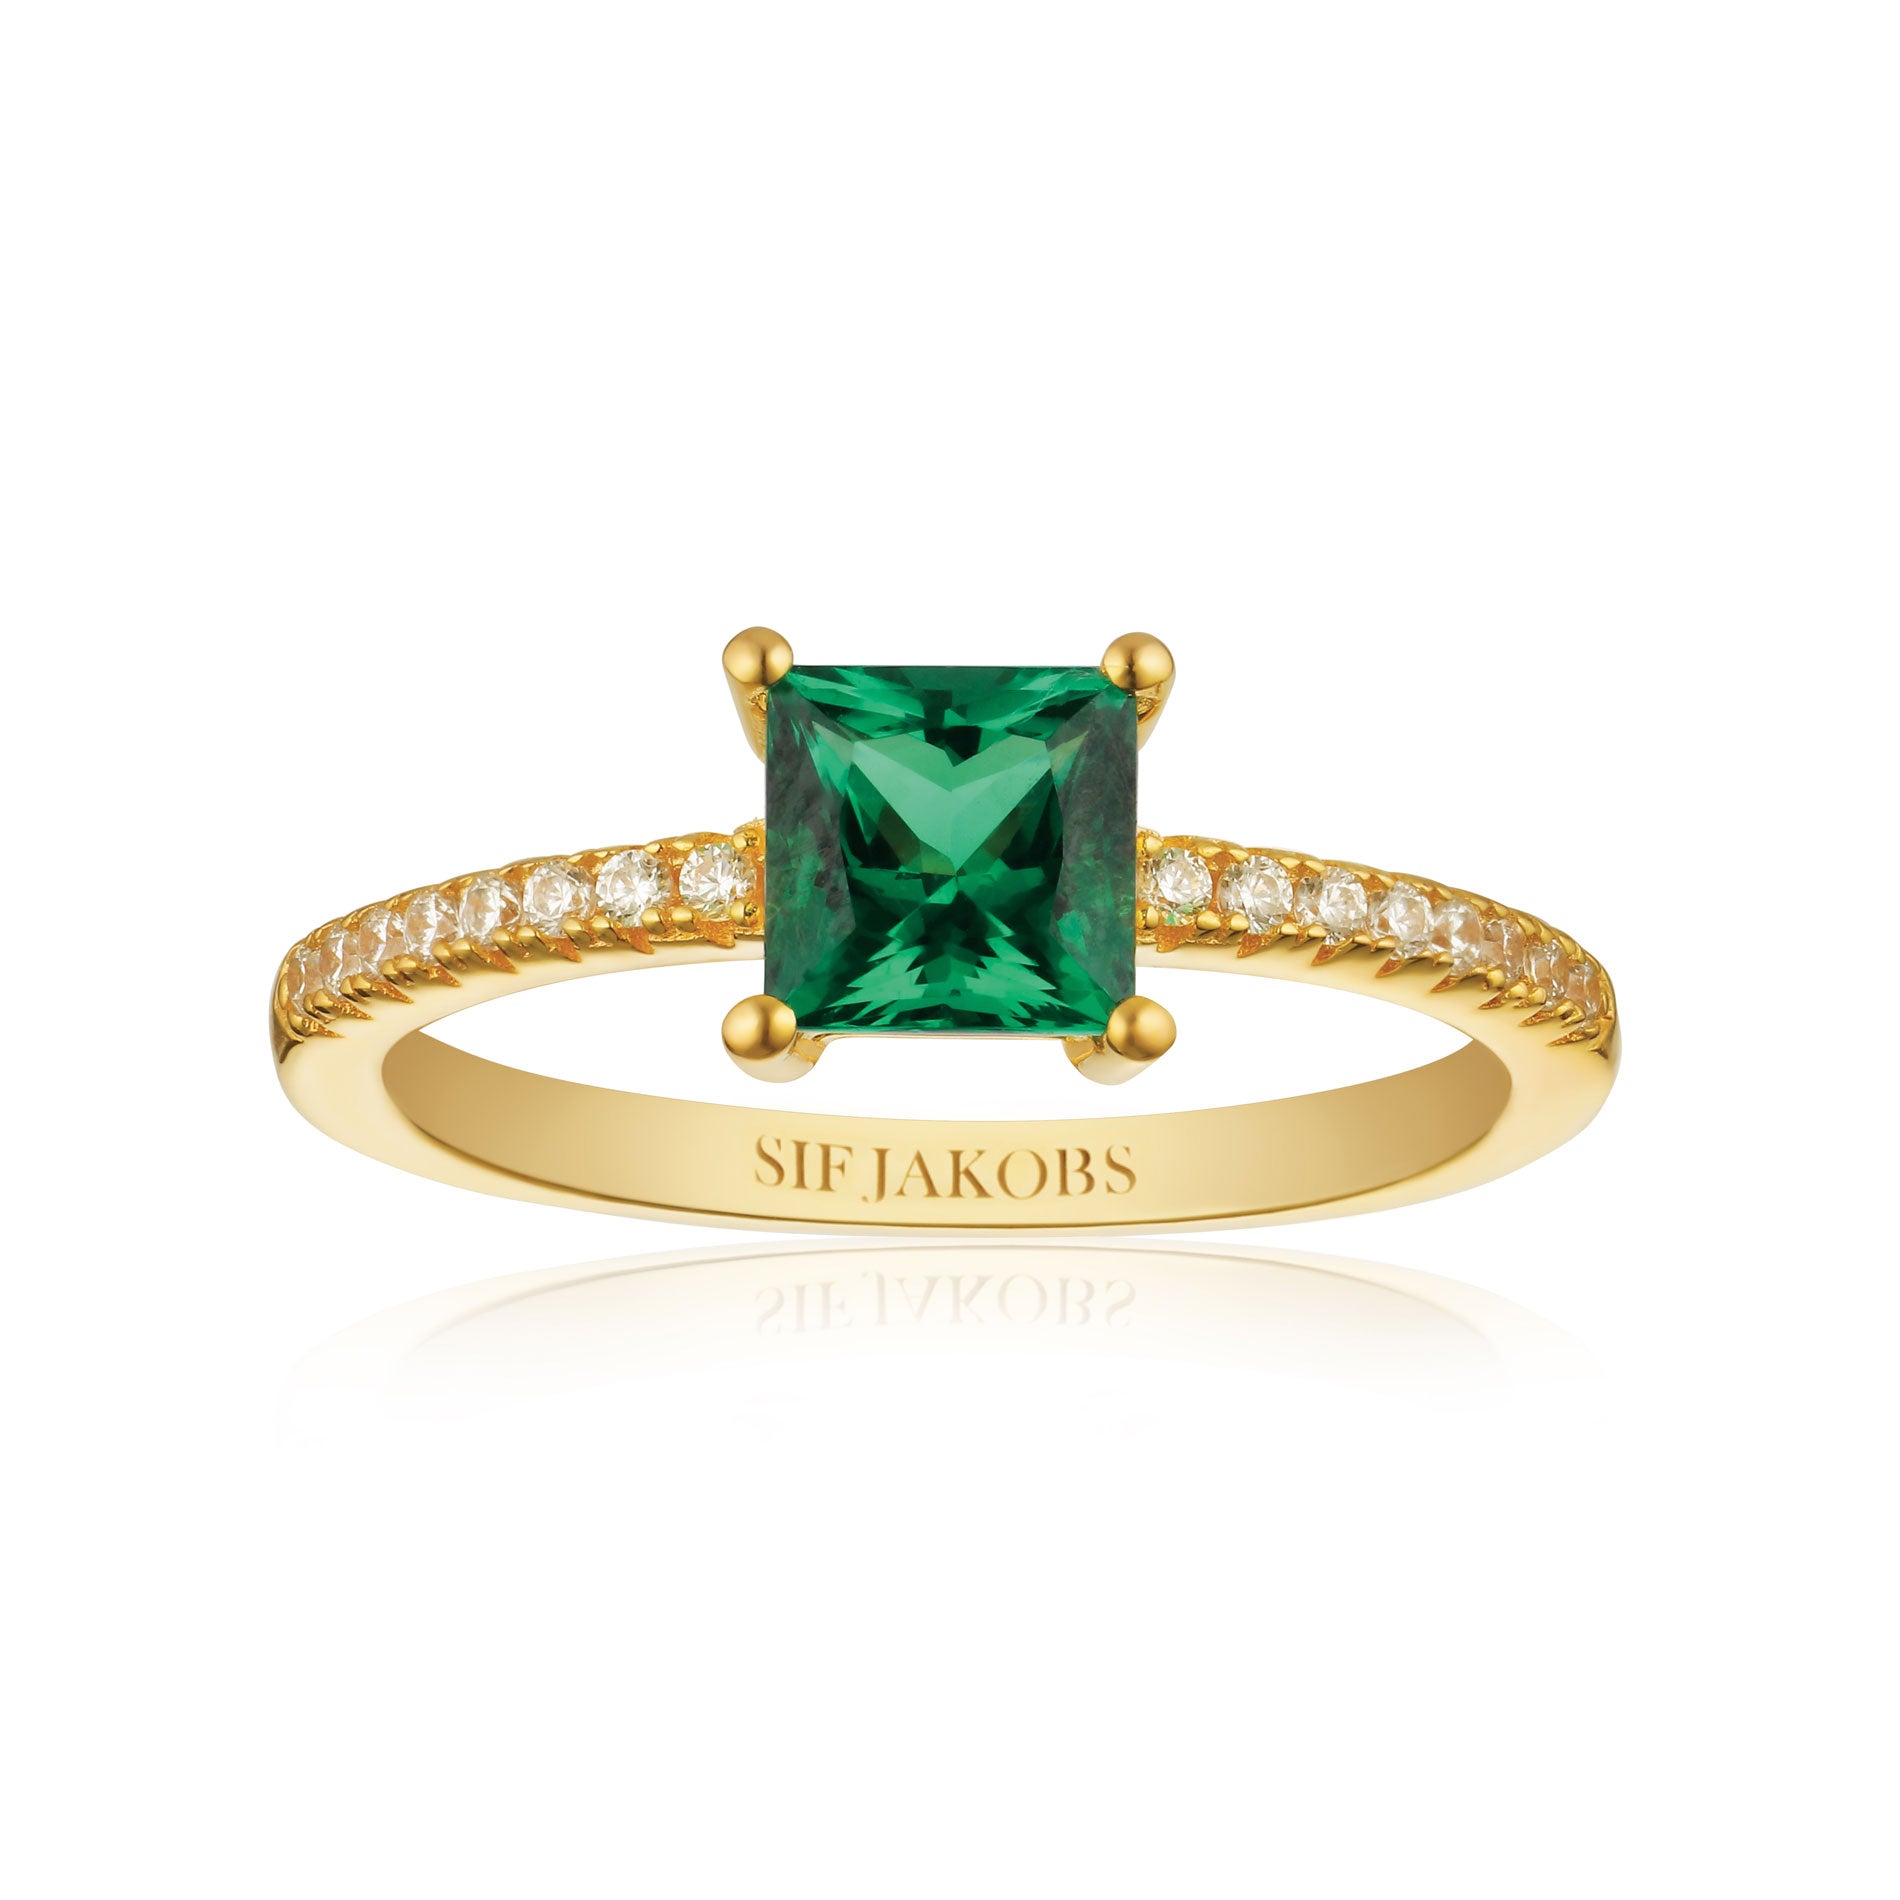 Sif Jakobs Ellera Quadrato ring i forgyldt med grøn og hvide zirkonia sten